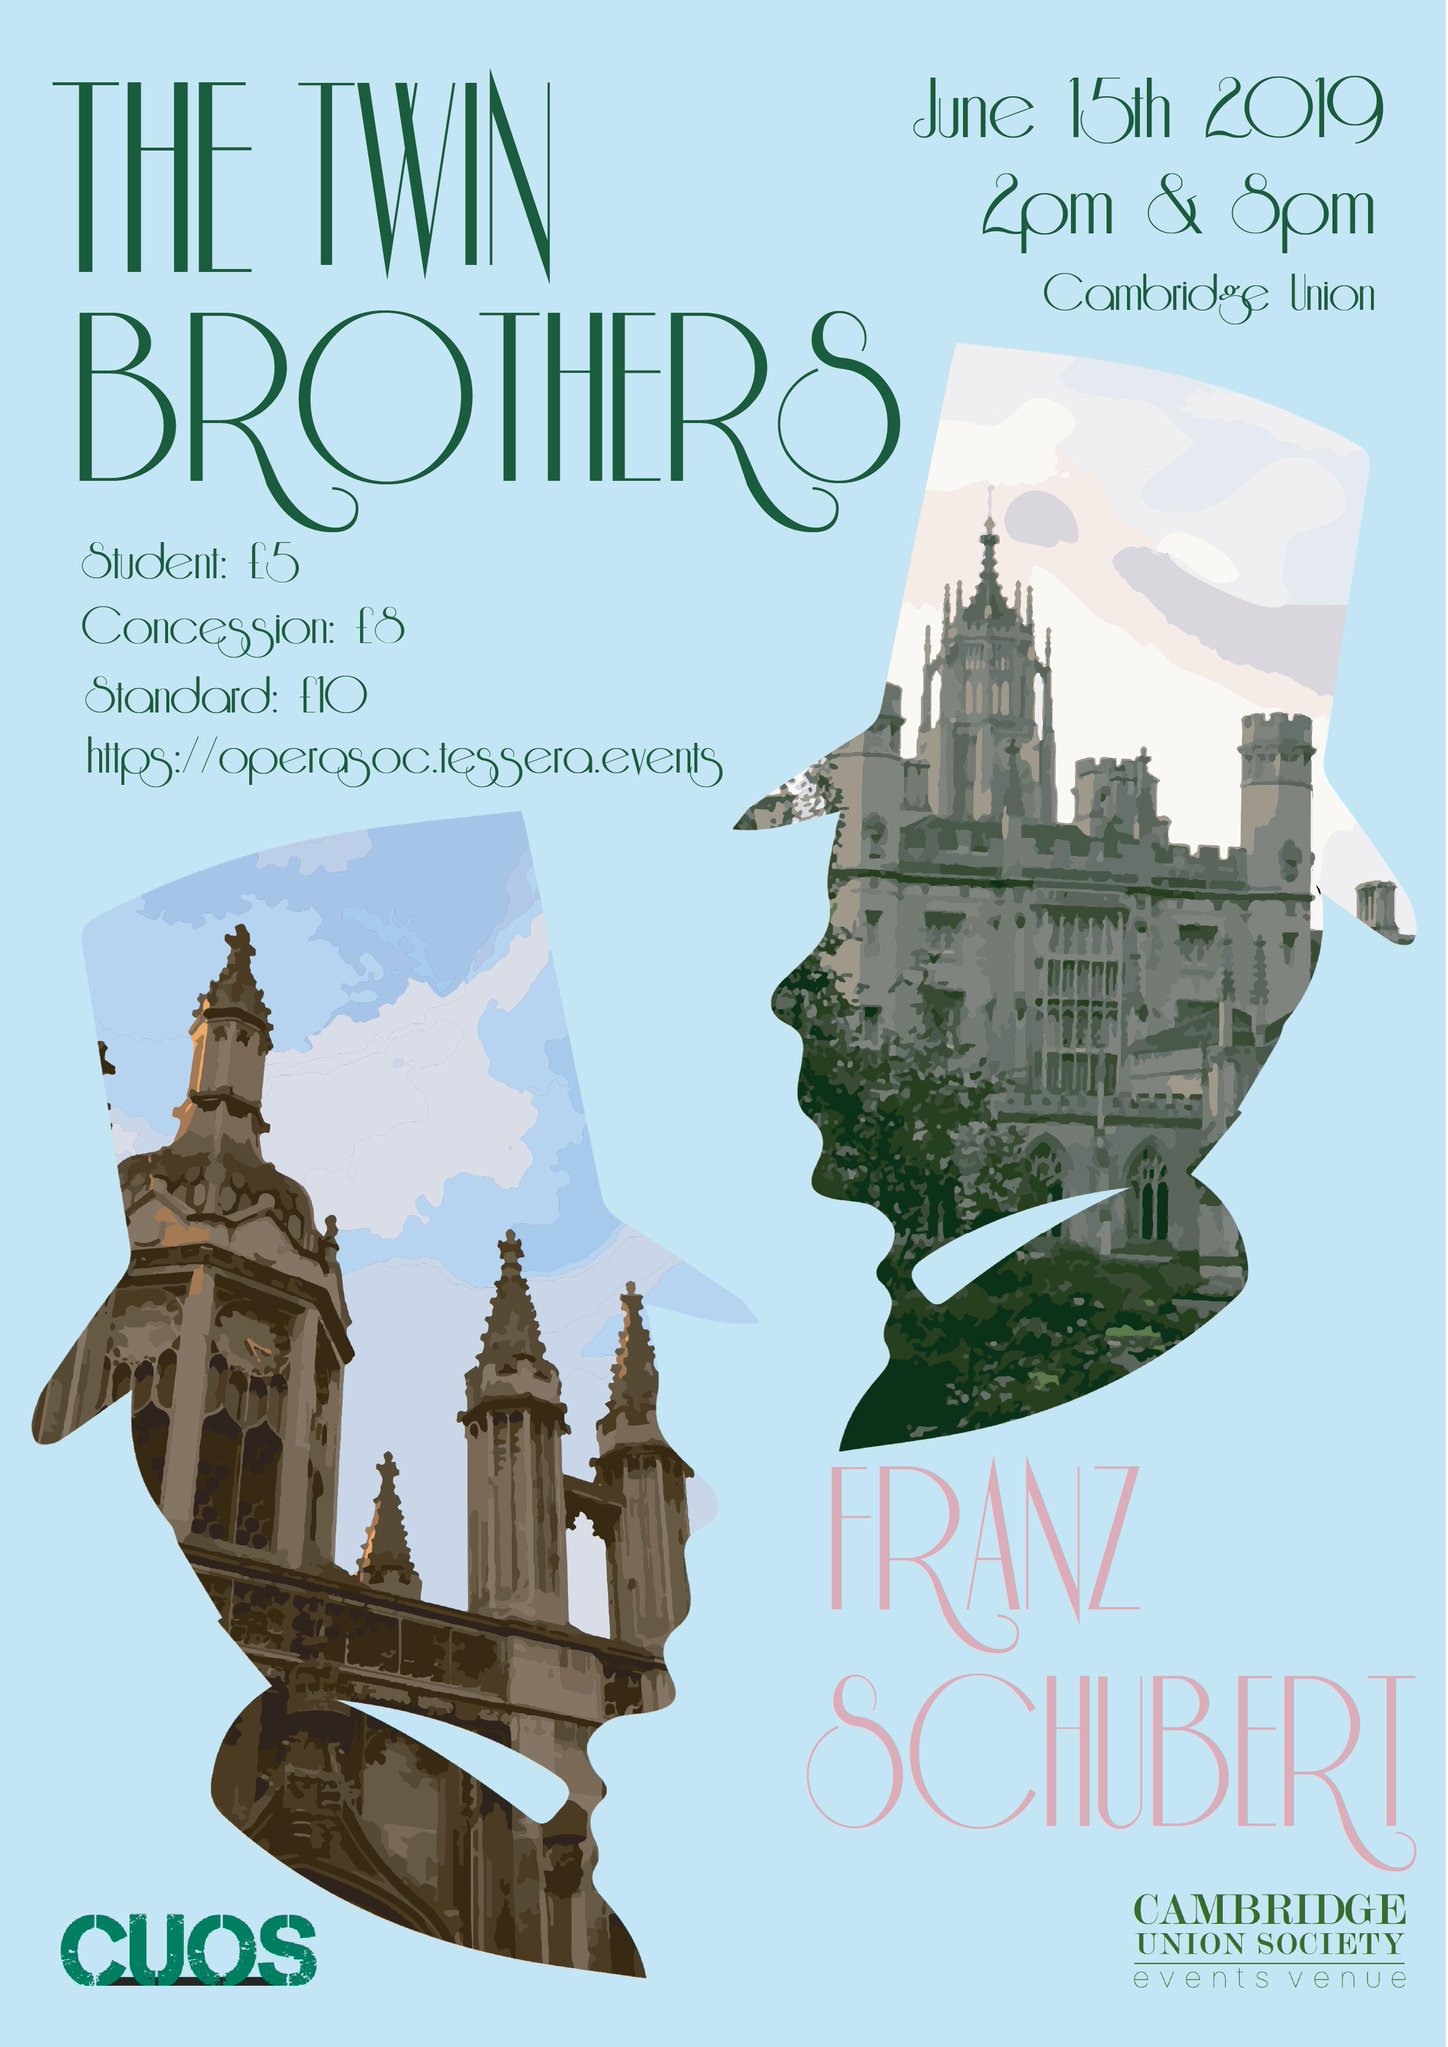 May week opera "die zwillingsbruder" or "twin brothers" by Schubert.